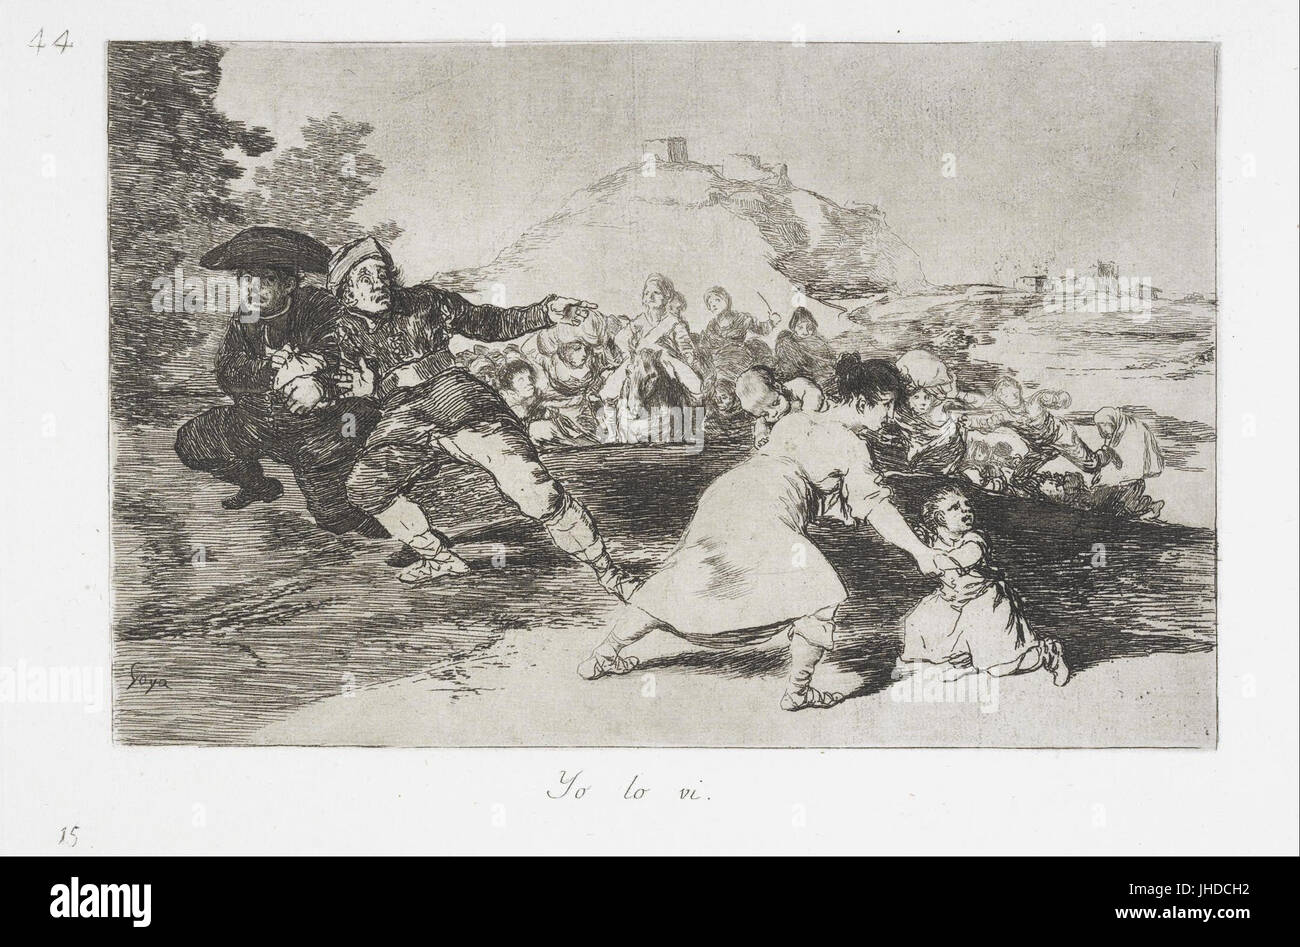 Francisco de Goya - I saw it (Yo lo vi) from the series The Disasters of War (Los Desastres de la Guerra) - Stock Photo